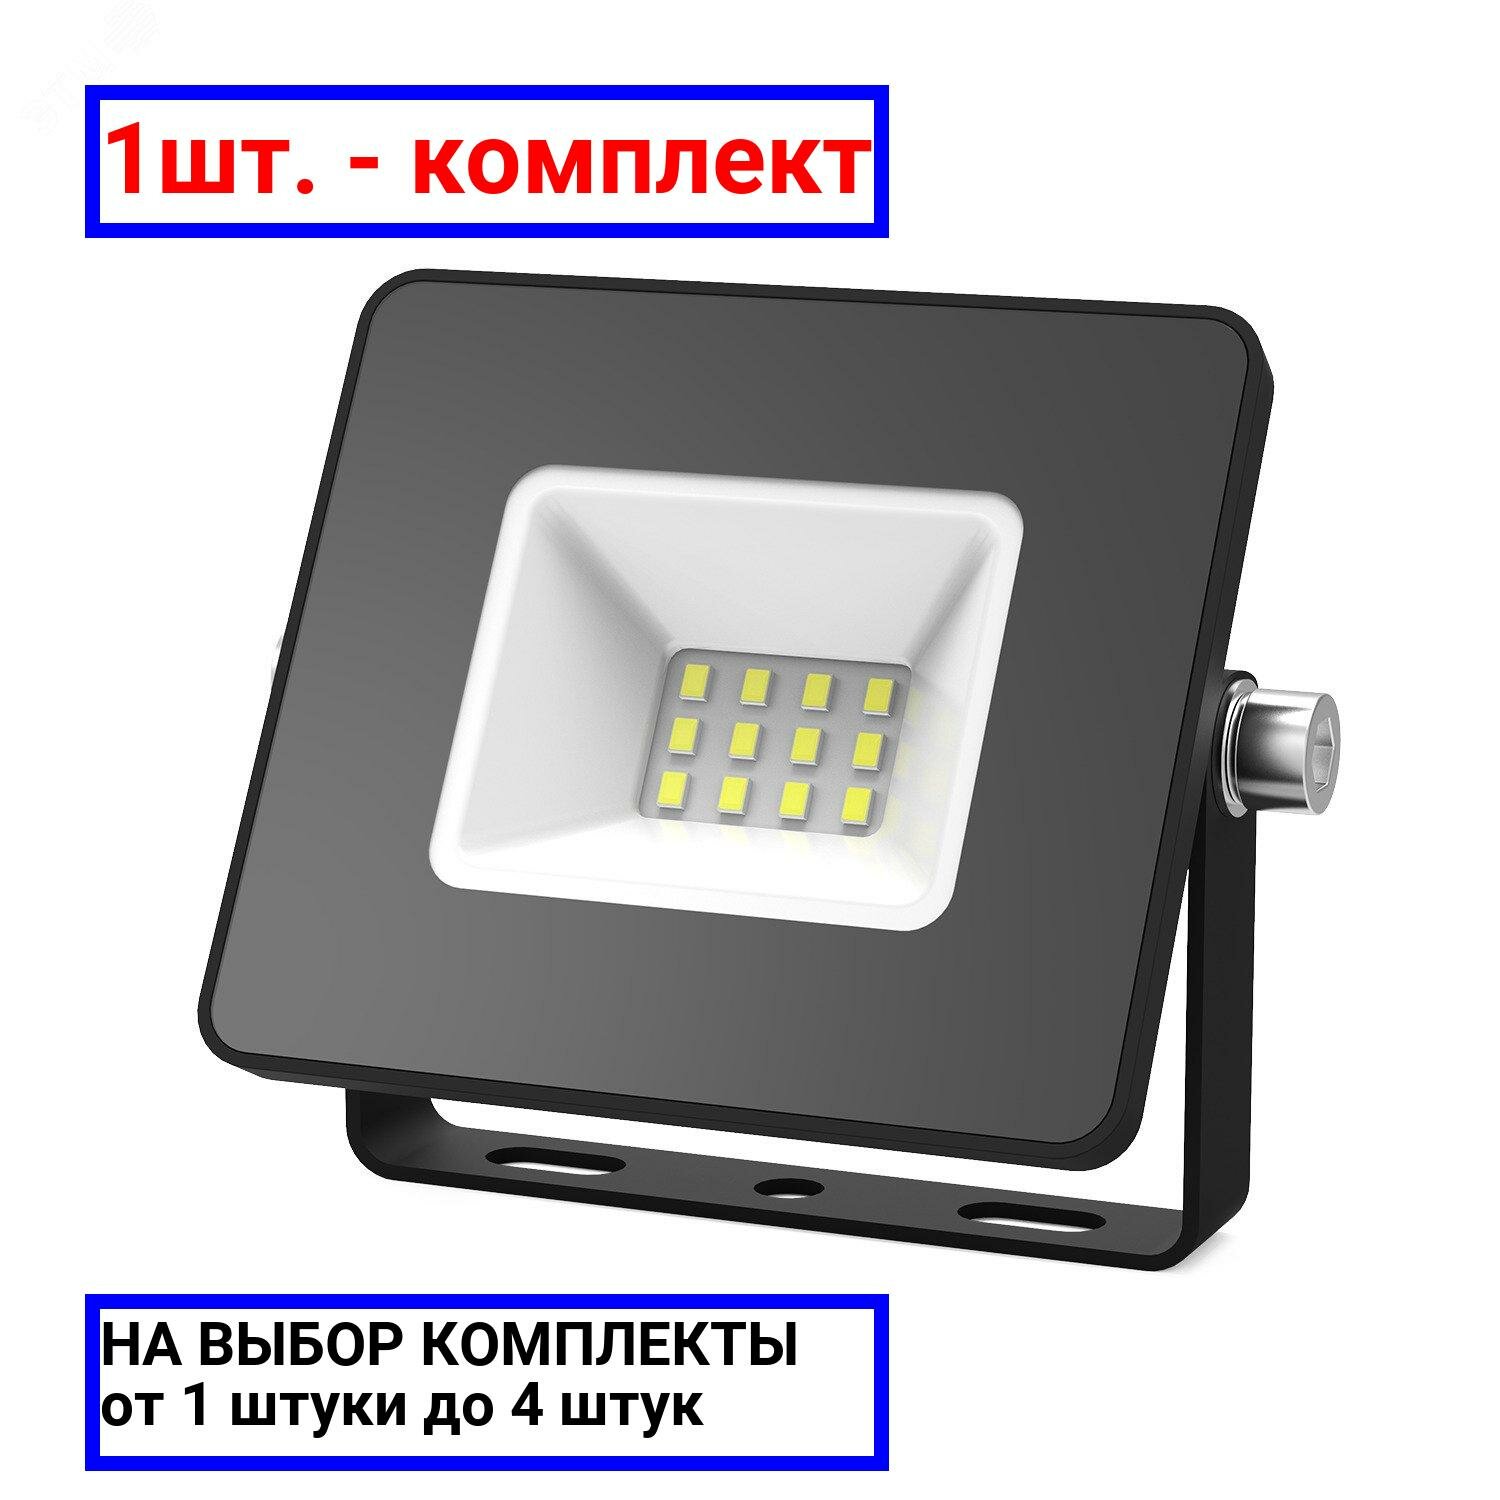 1шт. - Прожектор светодиодный LED до 10 Вт 850 Лм 6500К IP65 78х60х27 мм Elementary Gauss - комплект 1шт.